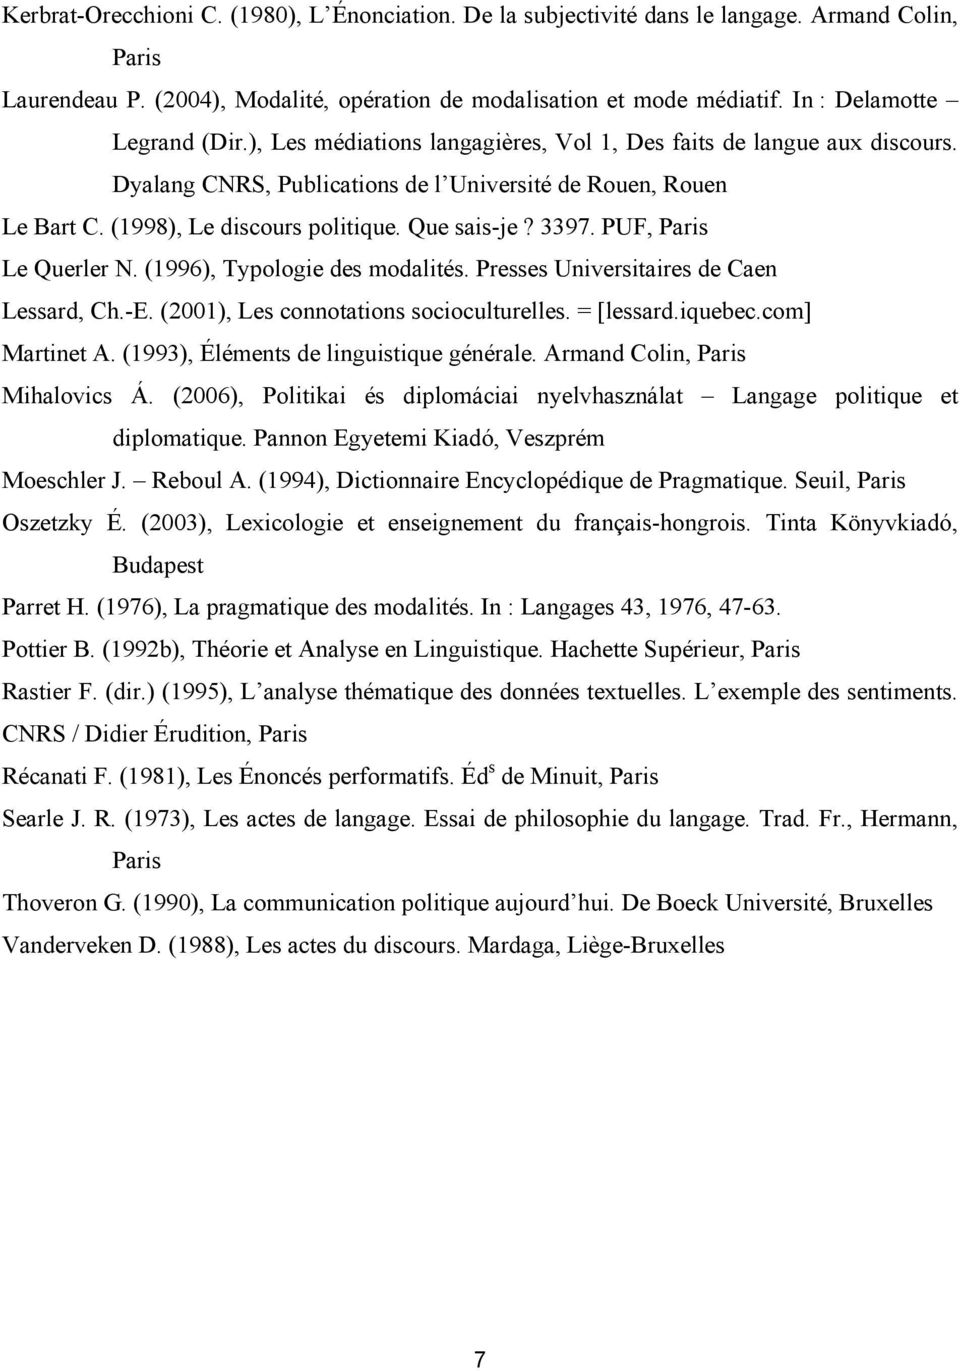 Que sais-je? 3397. PUF, Paris Le Querler N. (1996), Typologie des modalités. Presses Universitaires de Caen Lessard, Ch.-E. (2001), Les connotations socioculturelles. = [lessard.iquebec.